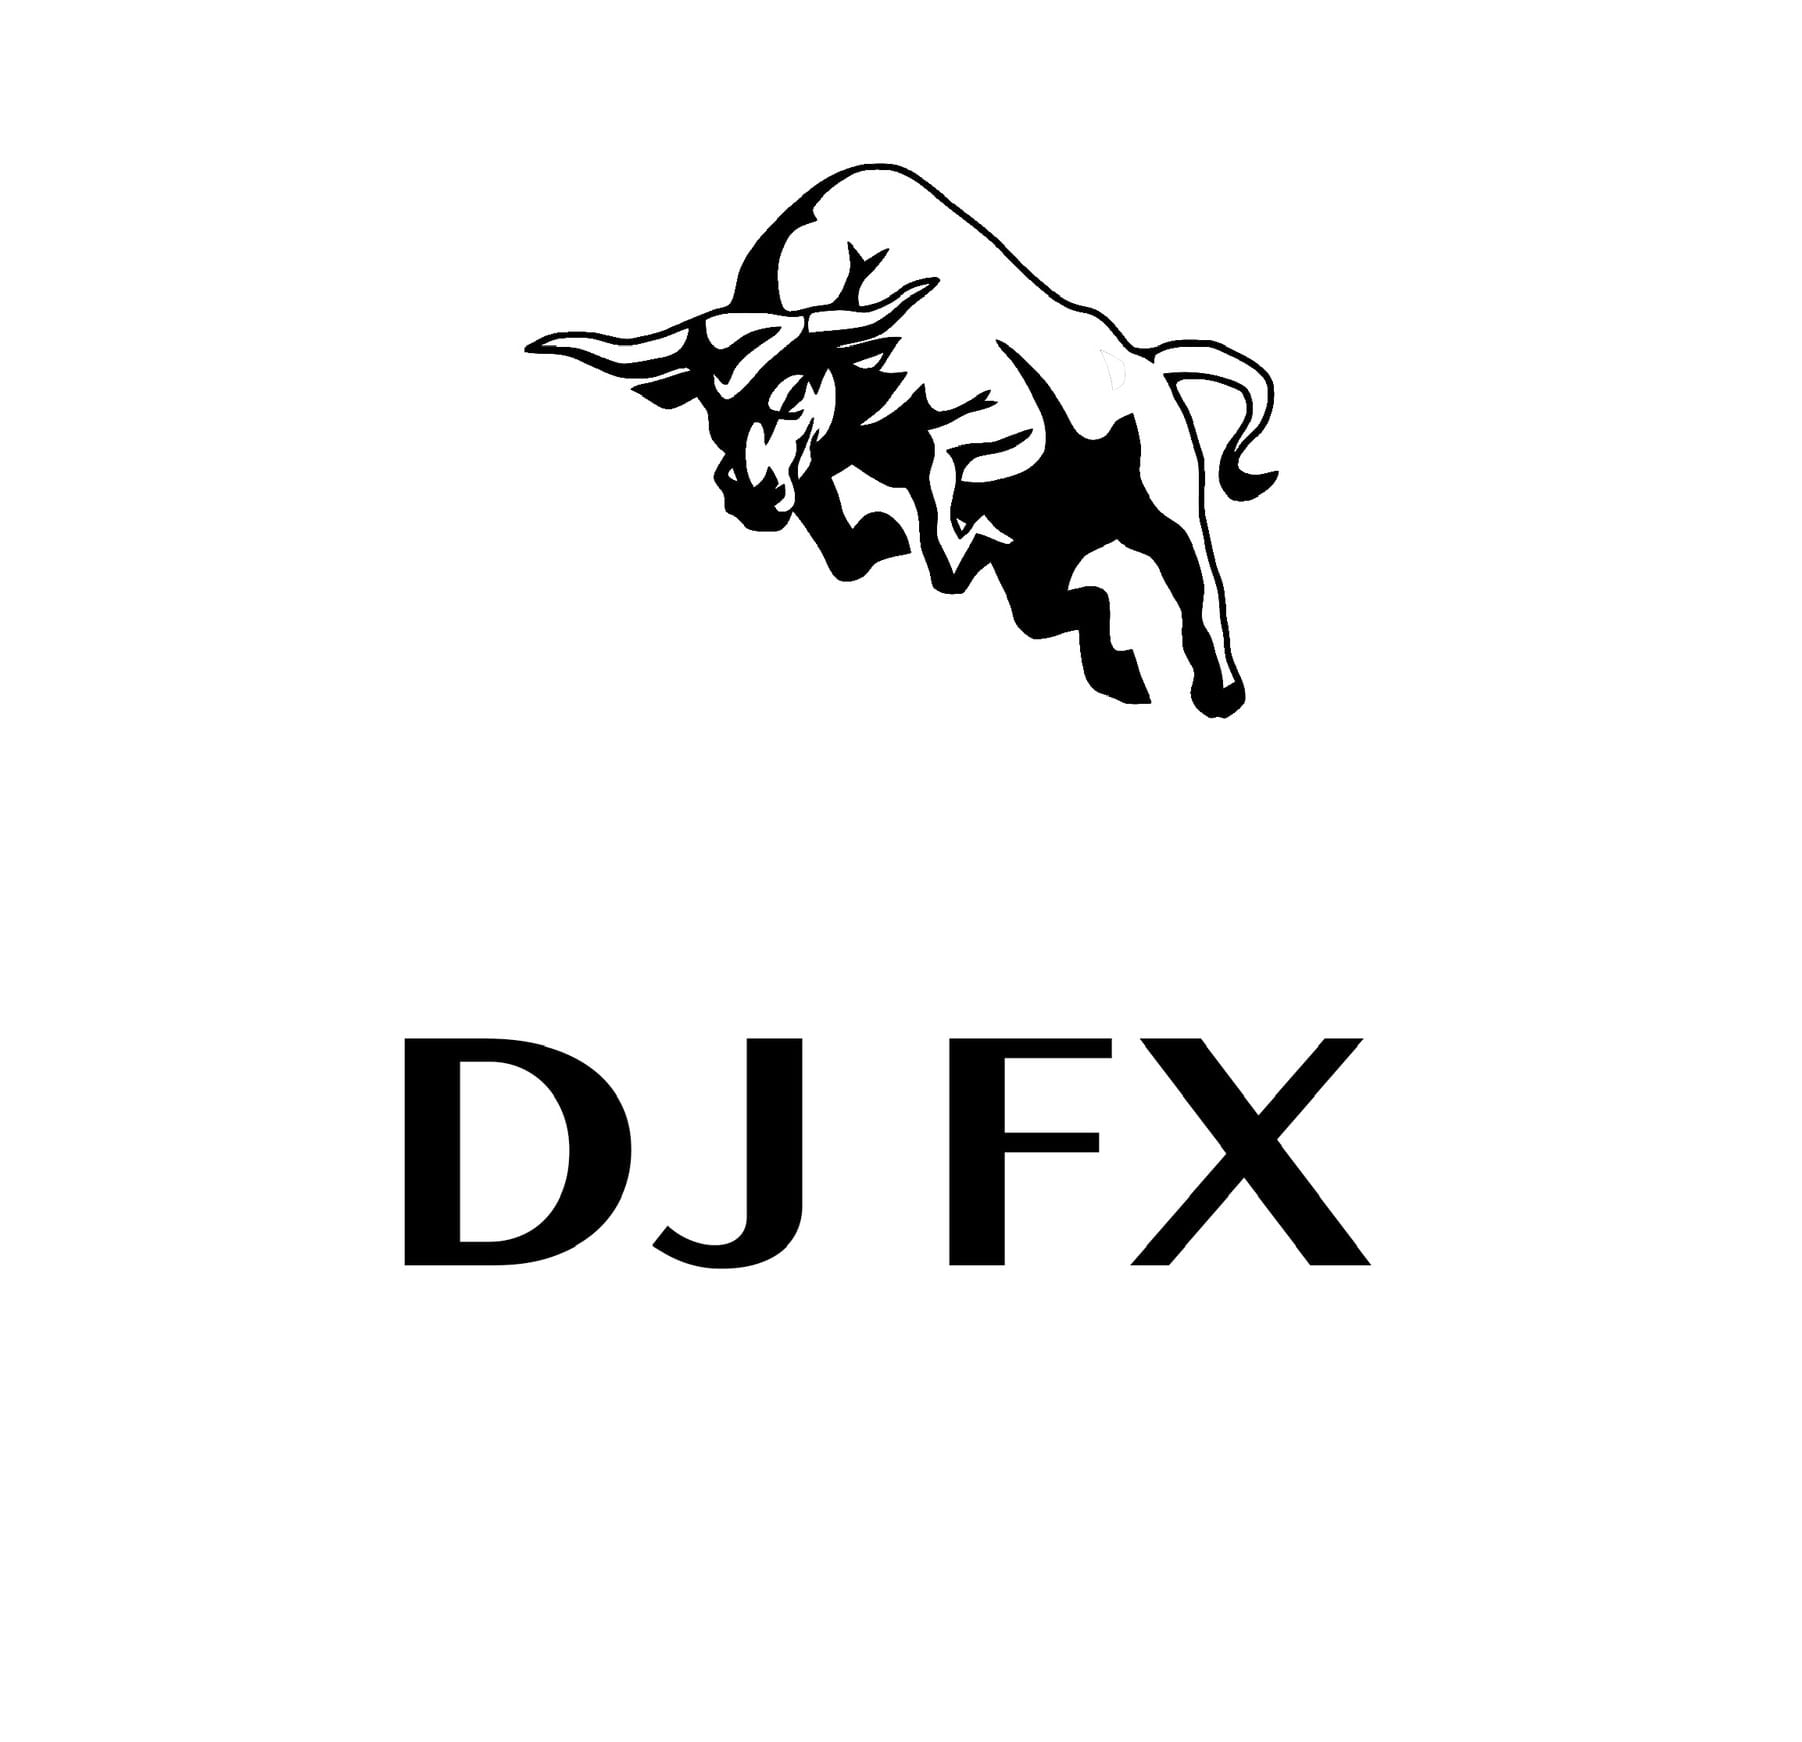 DJ FX